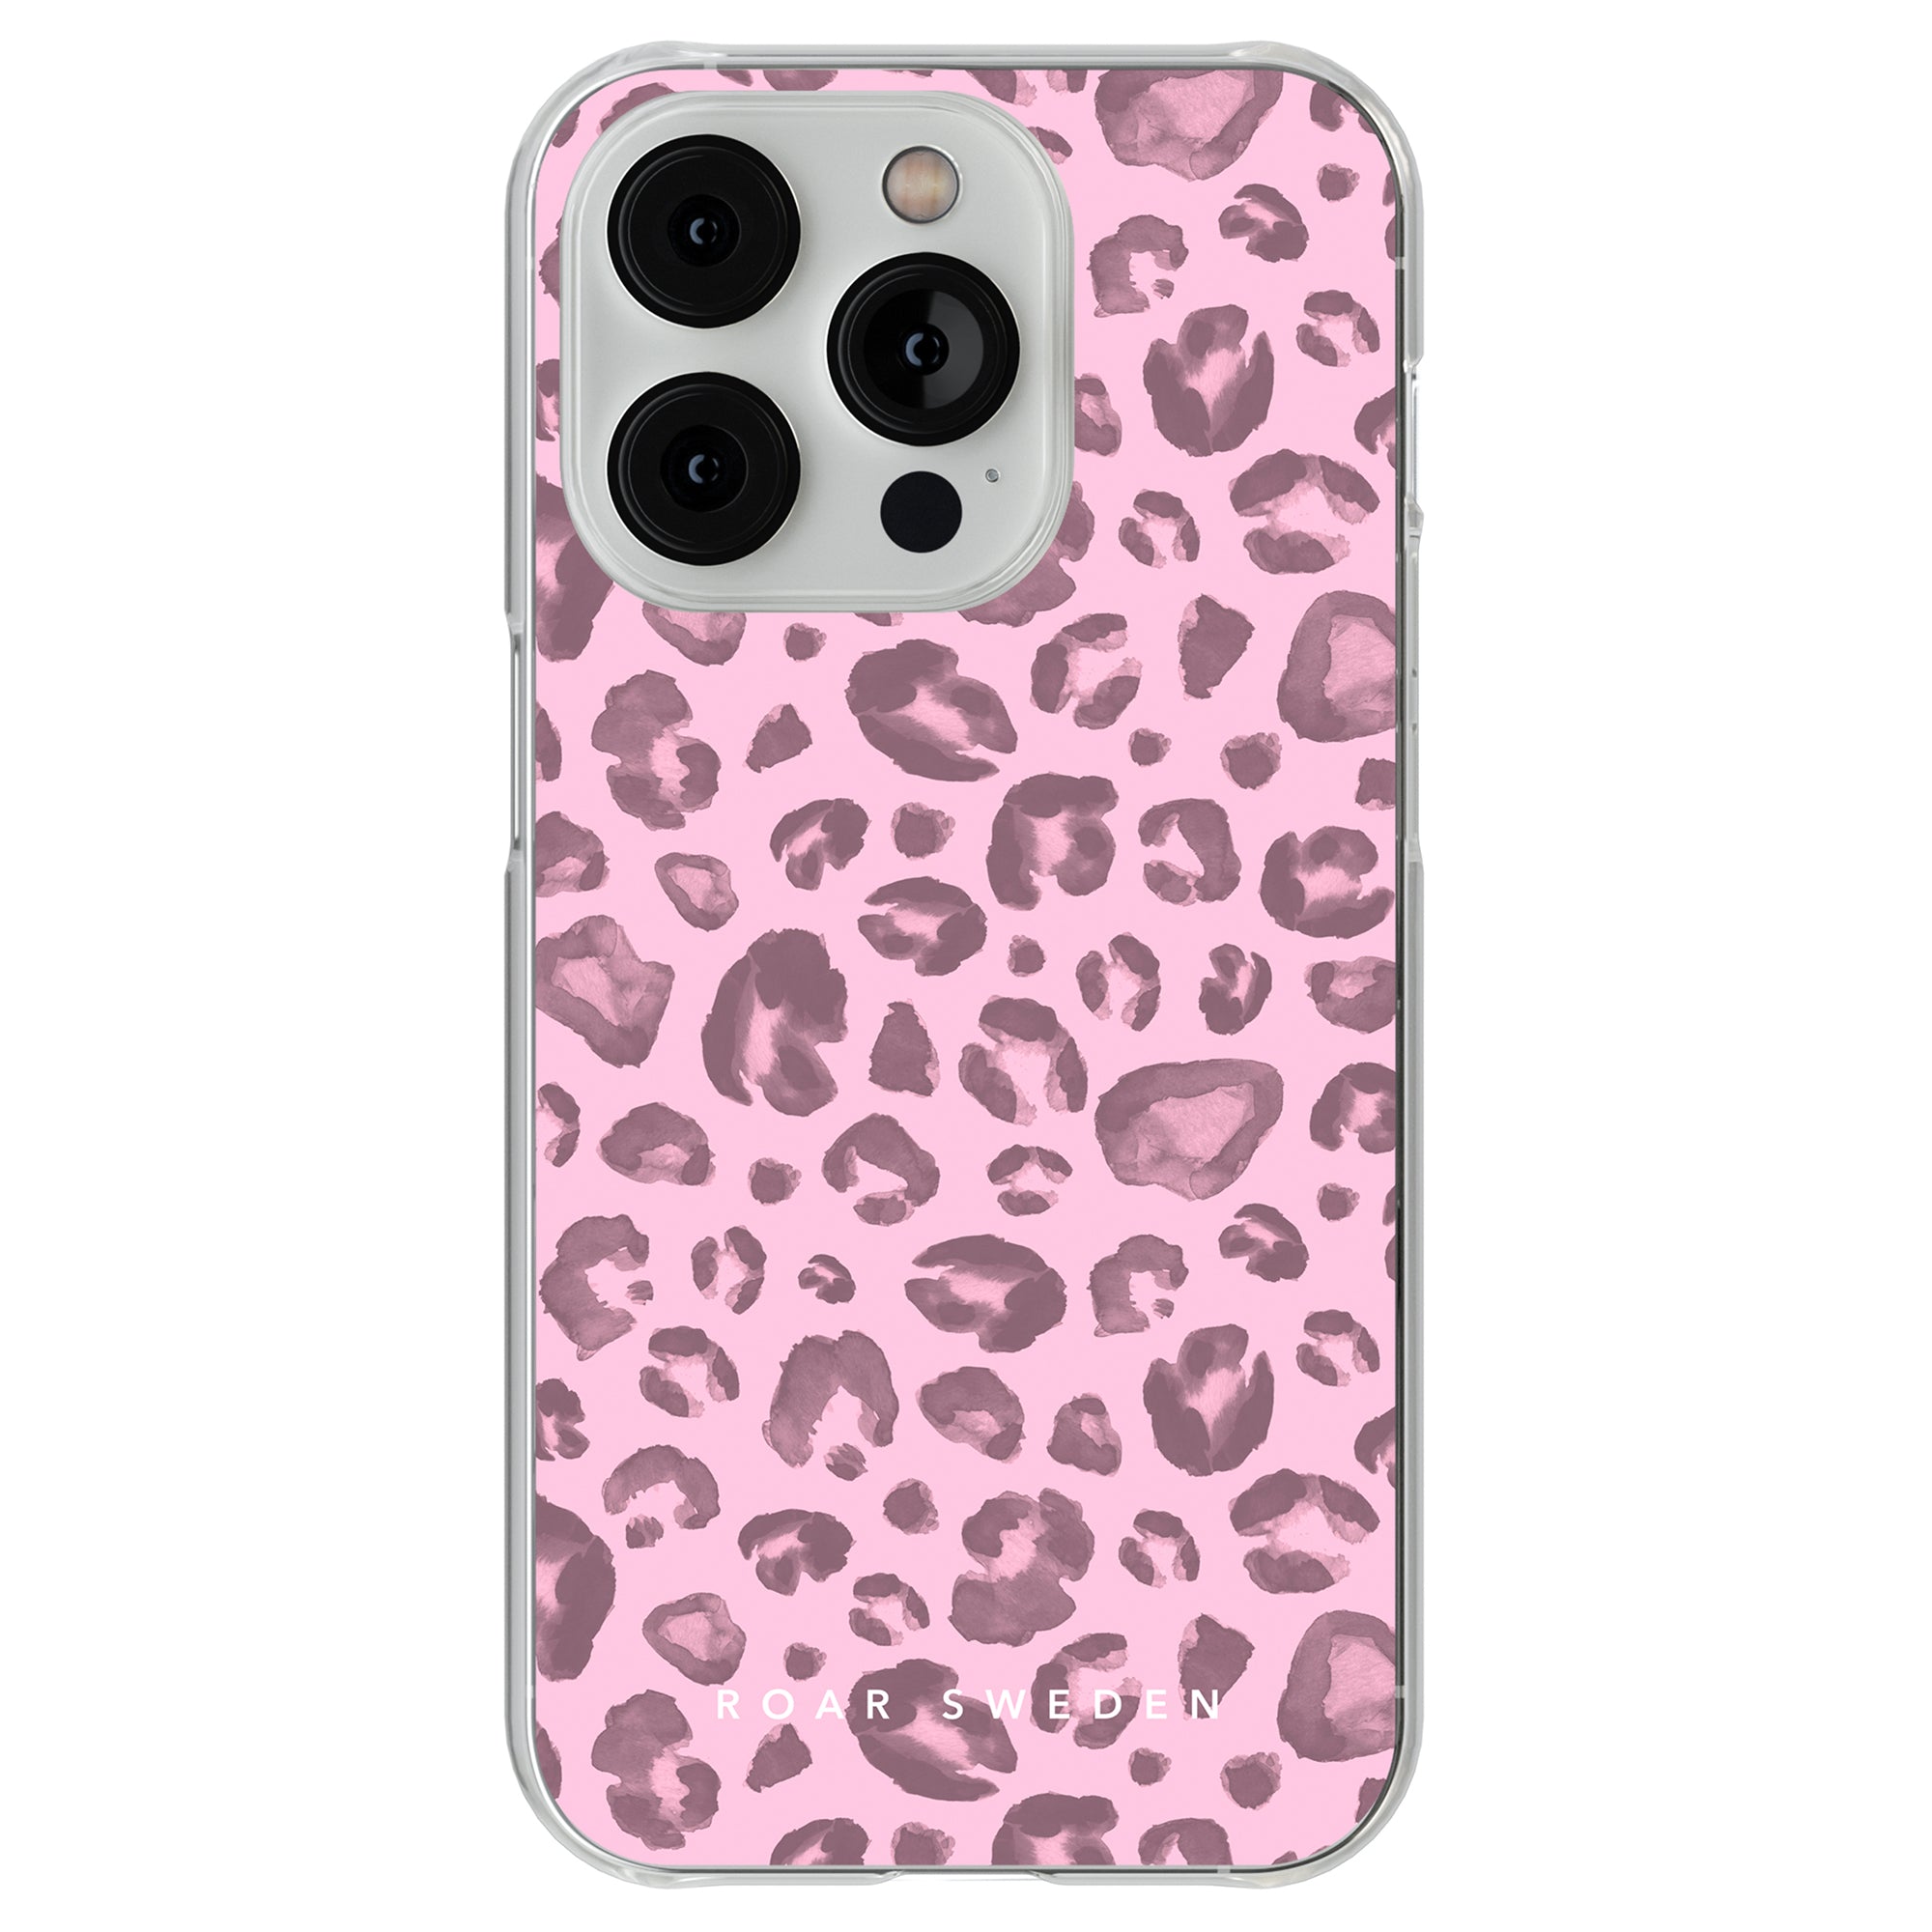 A Pinky Spots - genomskinligt fodral för iPhone 11.